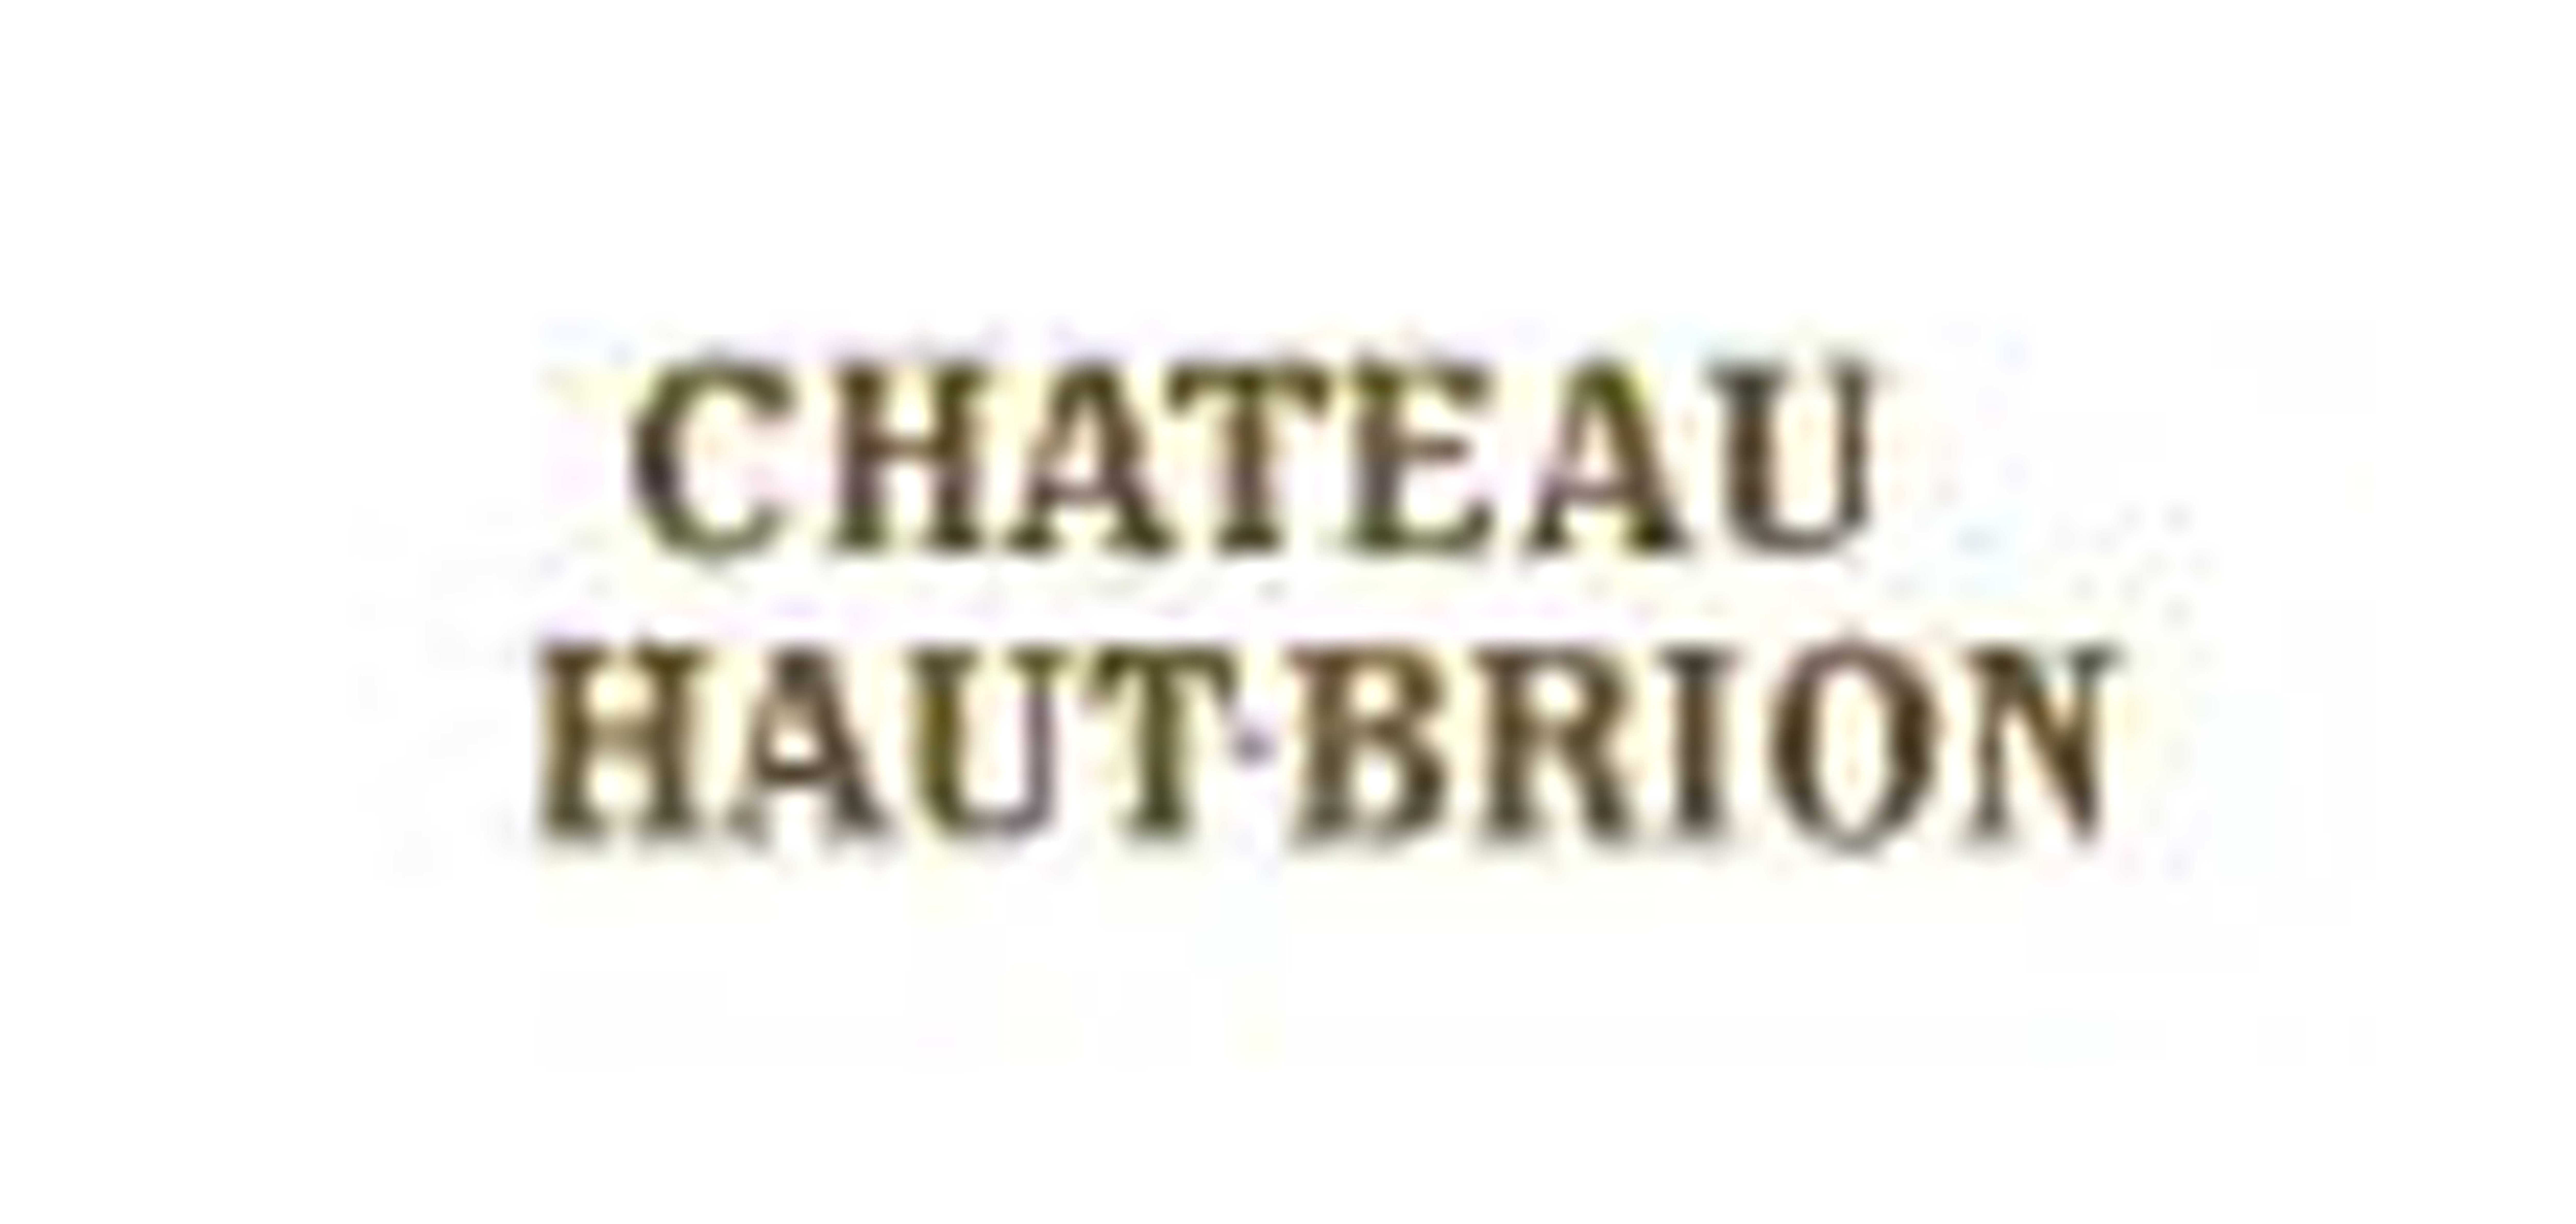 侯伯王酒庄/Château Haut-Brion